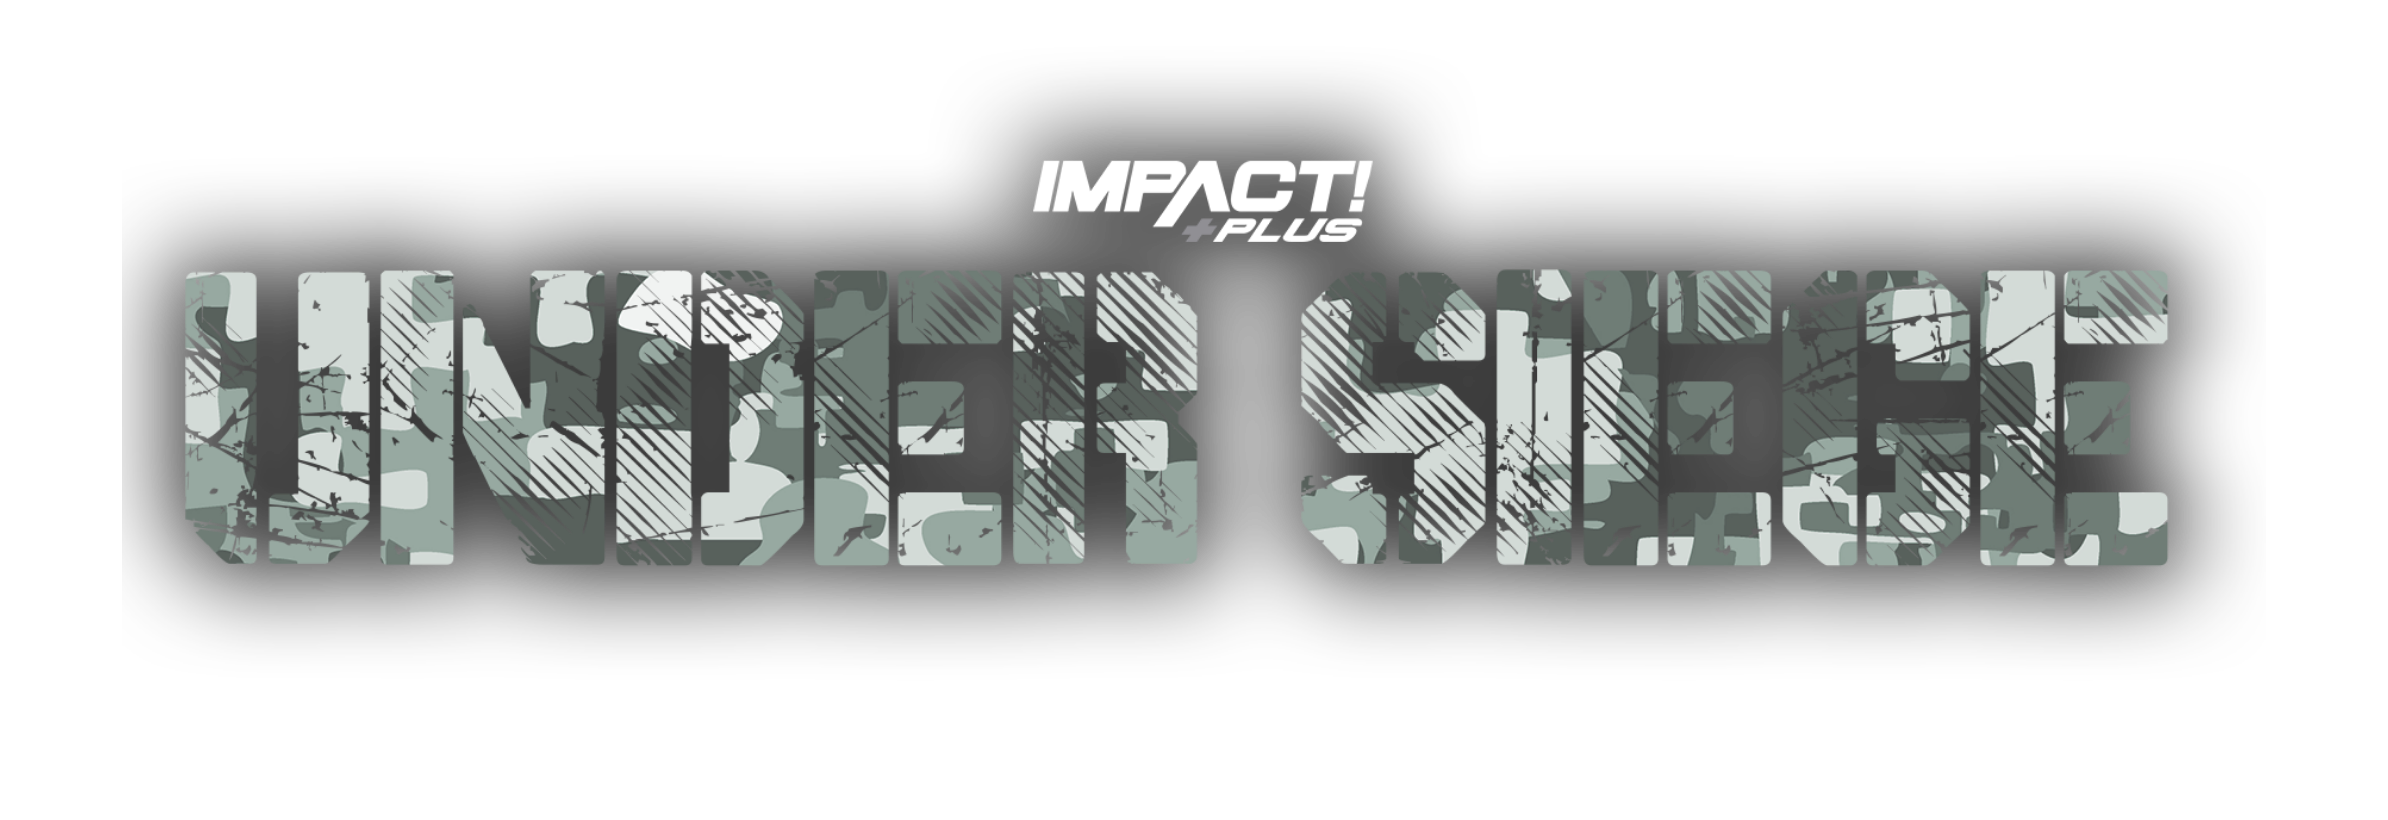 Under Siege IMPACT Wrestling